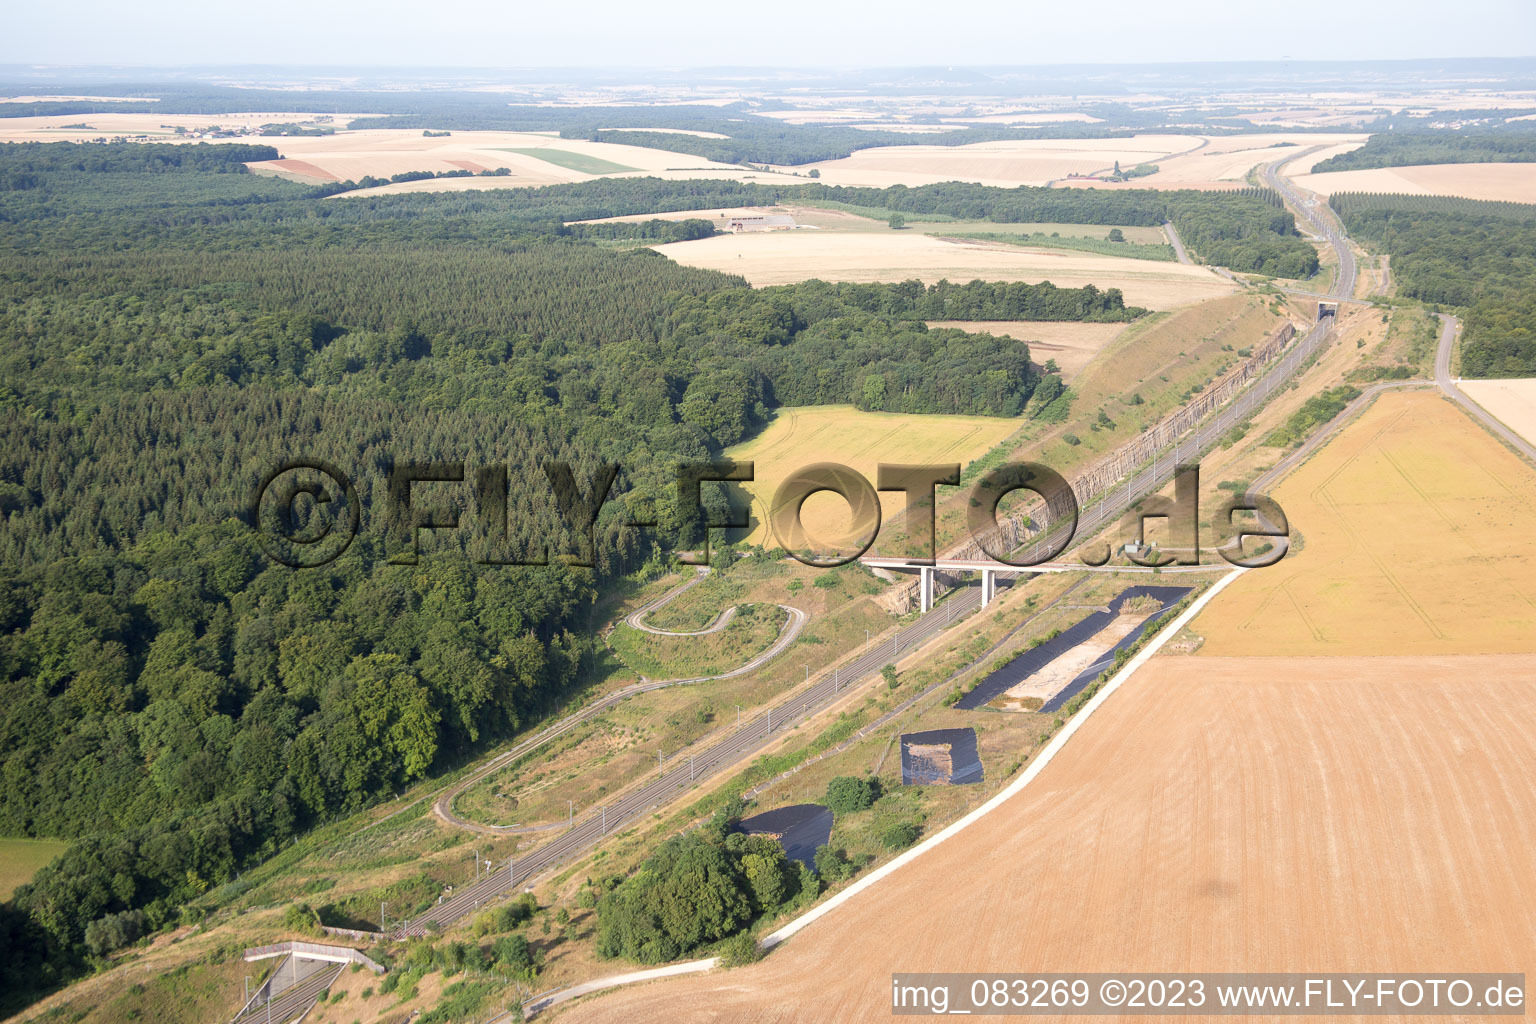 Prény dans le département Meurthe et Moselle, France vue d'en haut